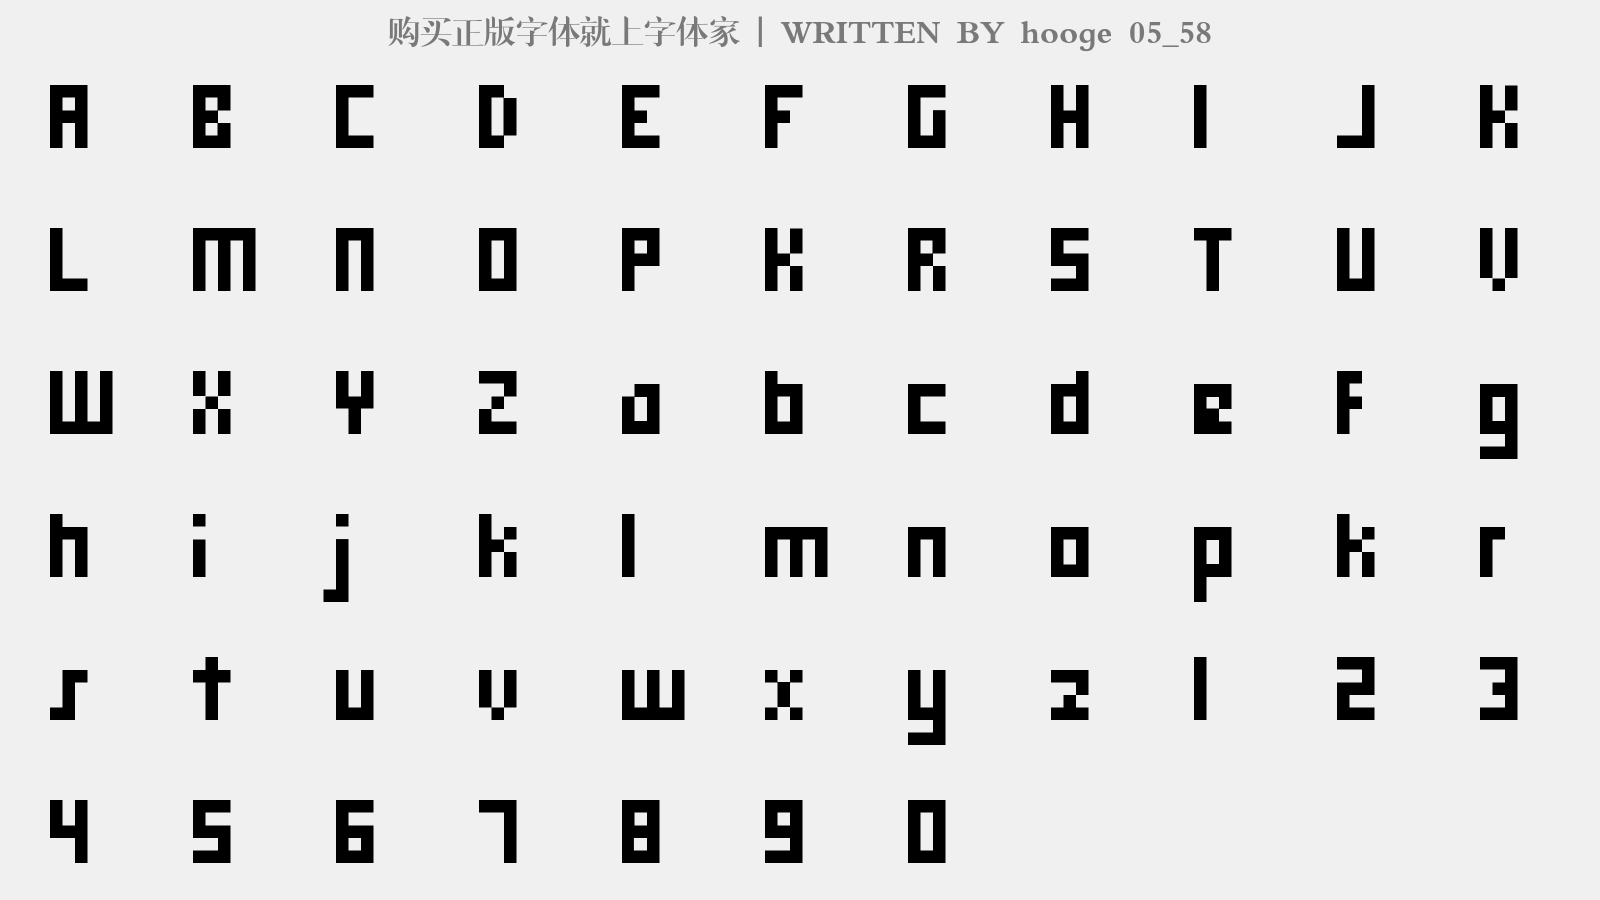 hooge 05_58 - 大写字母/小写字母/数字